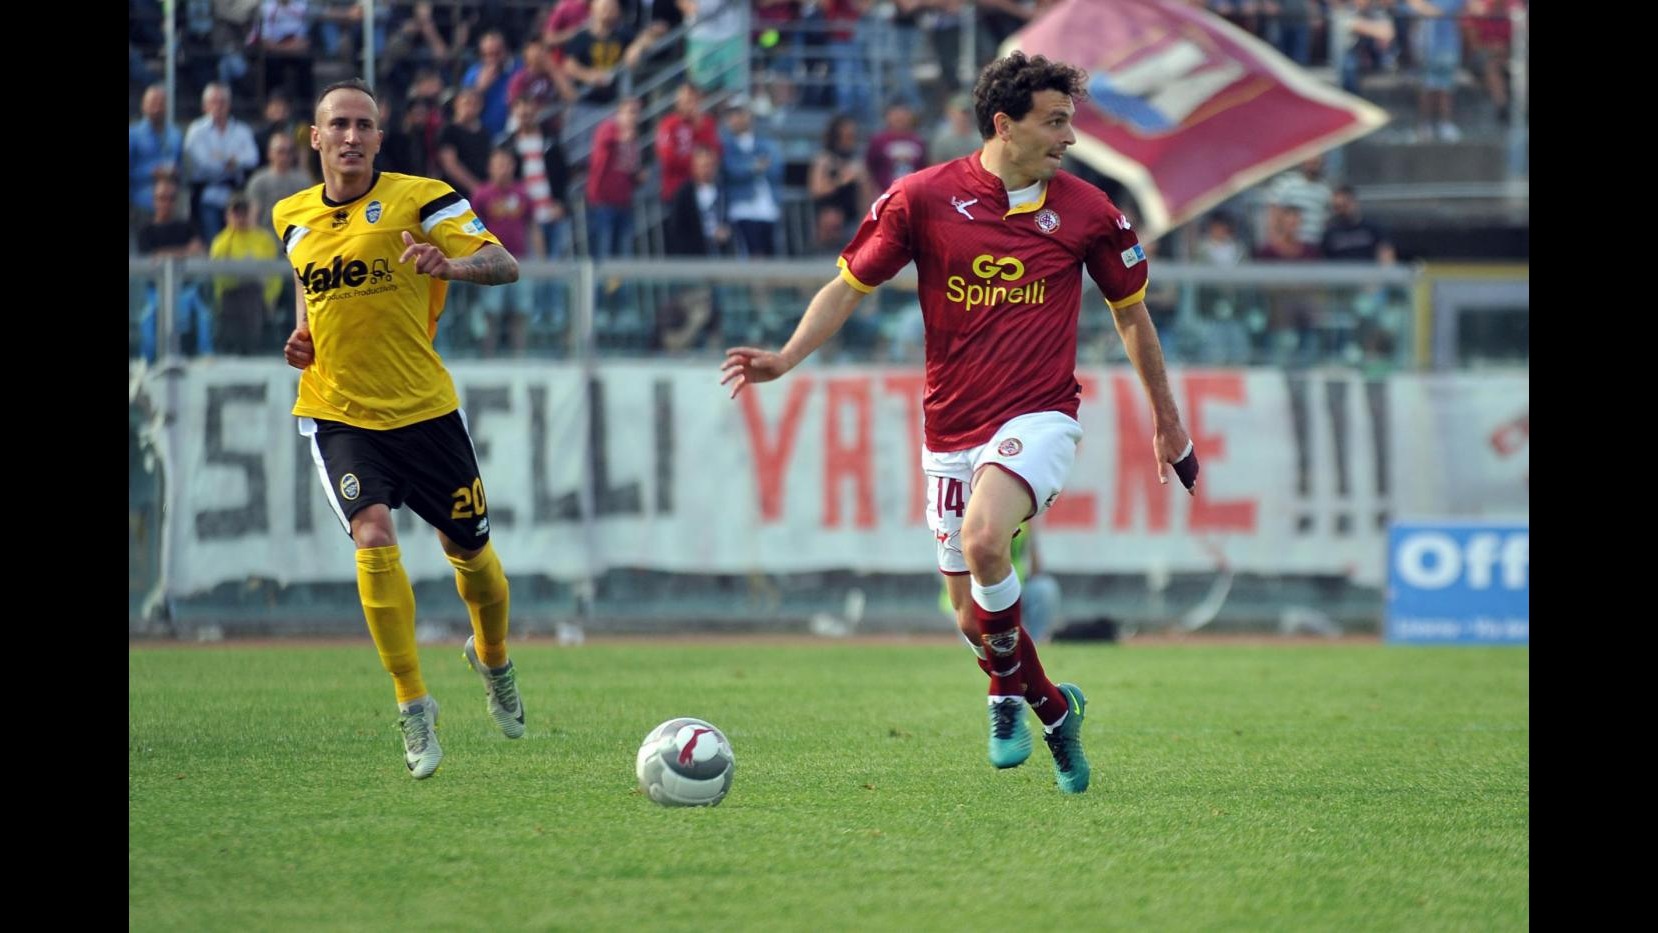 FOTO Lega Pro Playoff, Livorno-Renate 2-1